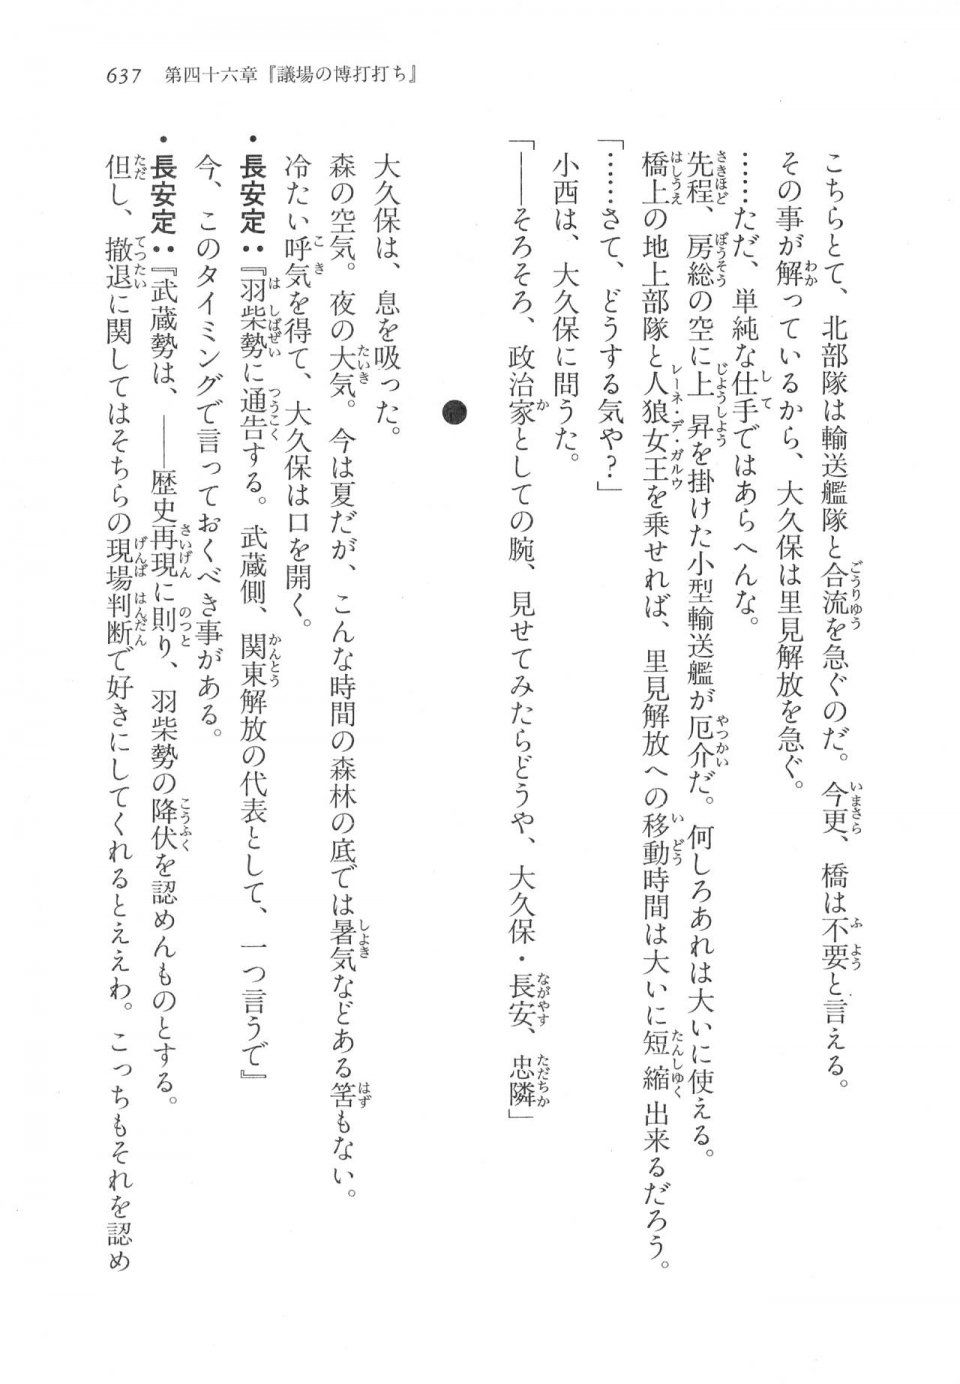 Kyoukai Senjou no Horizon LN Vol 17(7B) - Photo #639